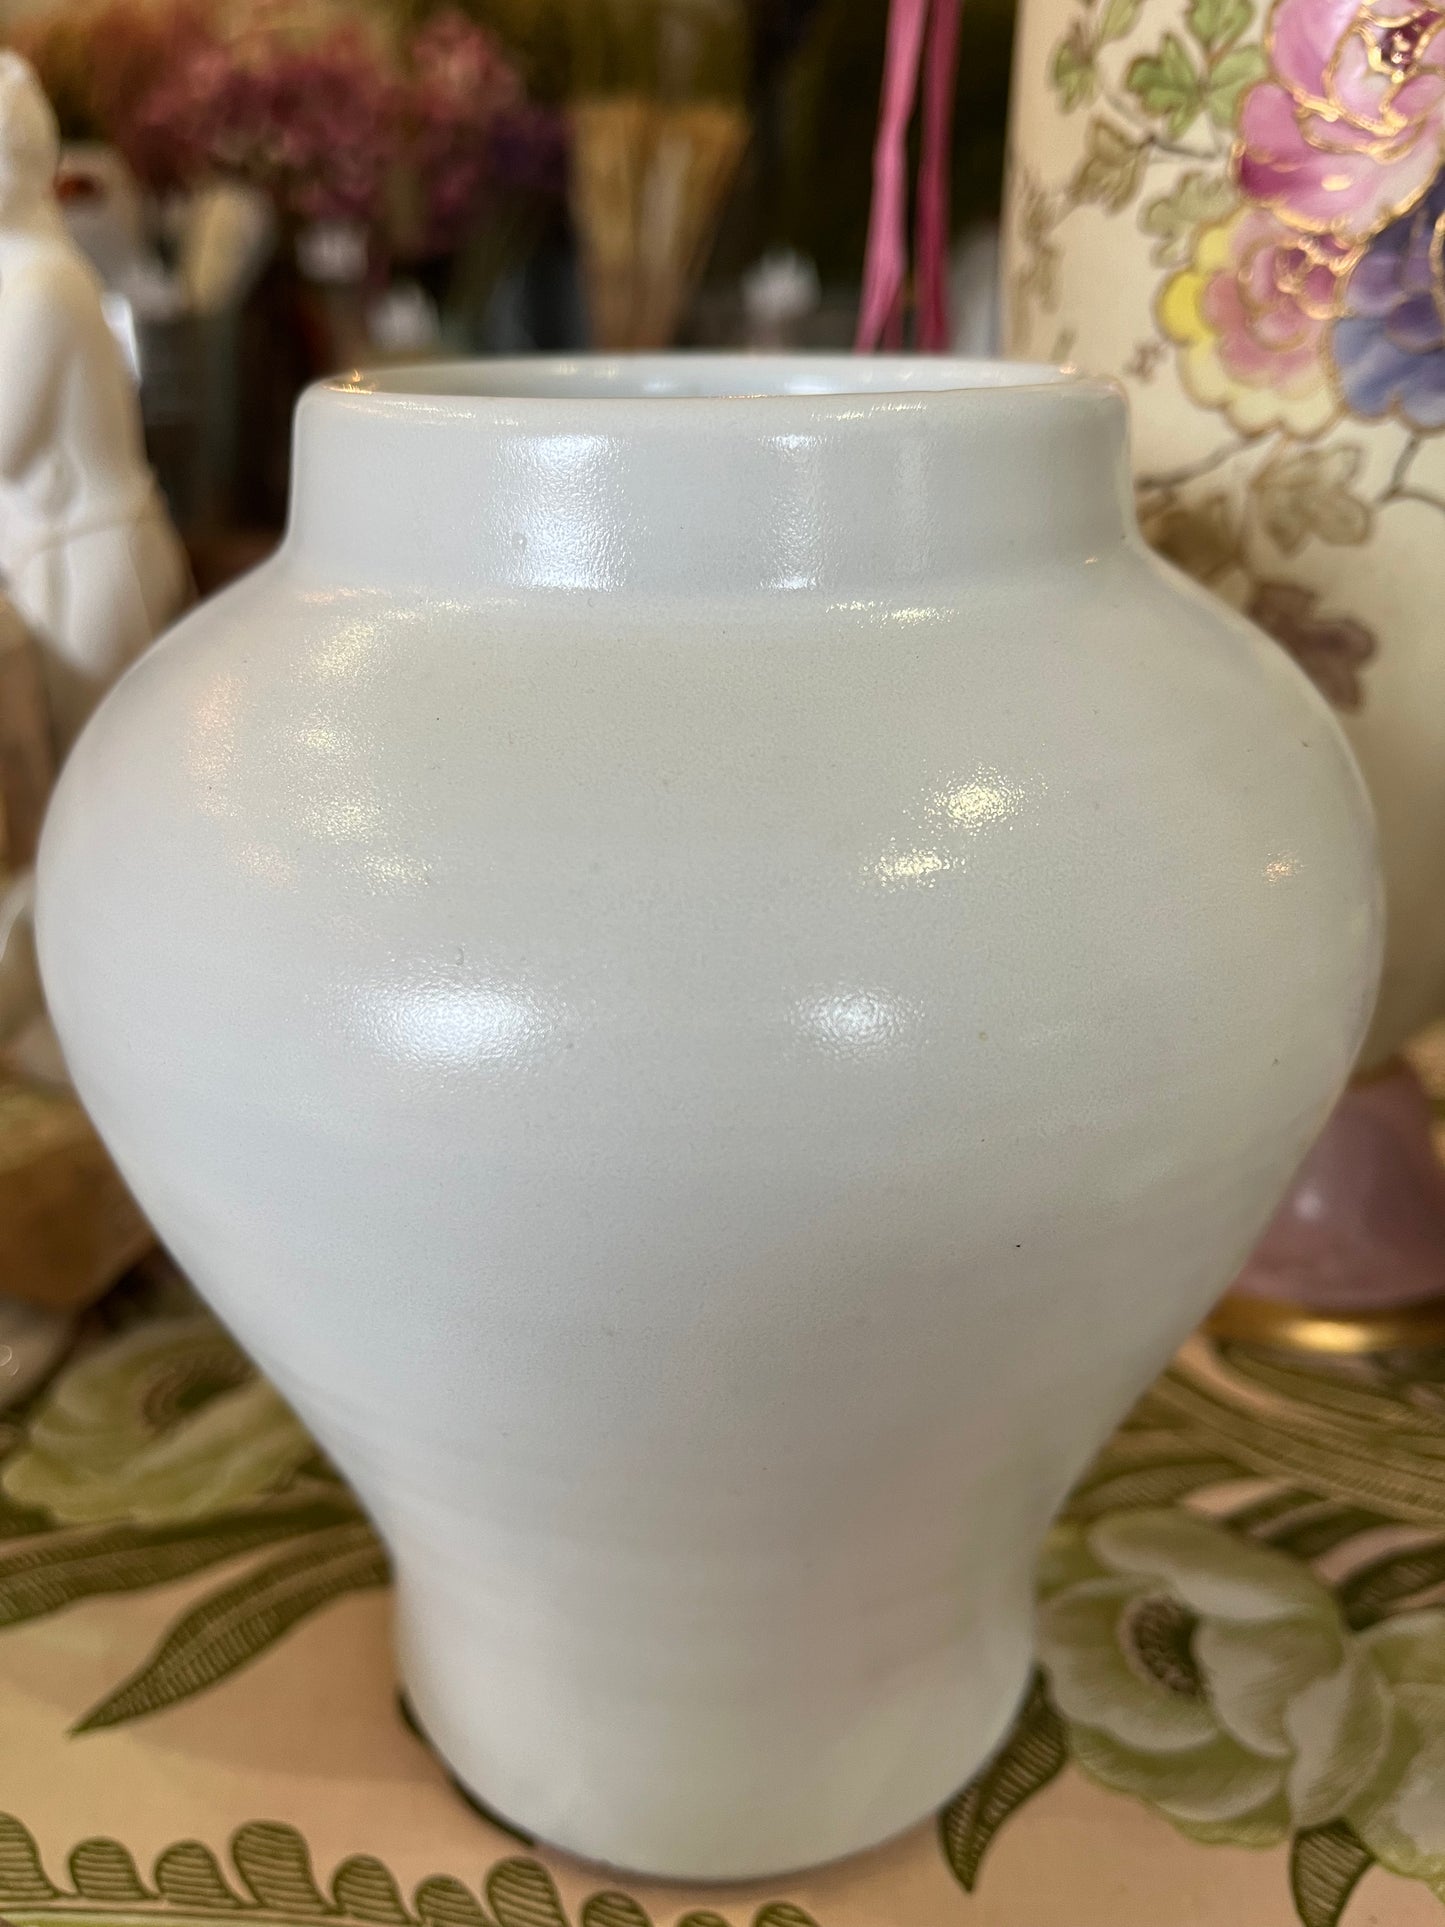 White Glazed Pot